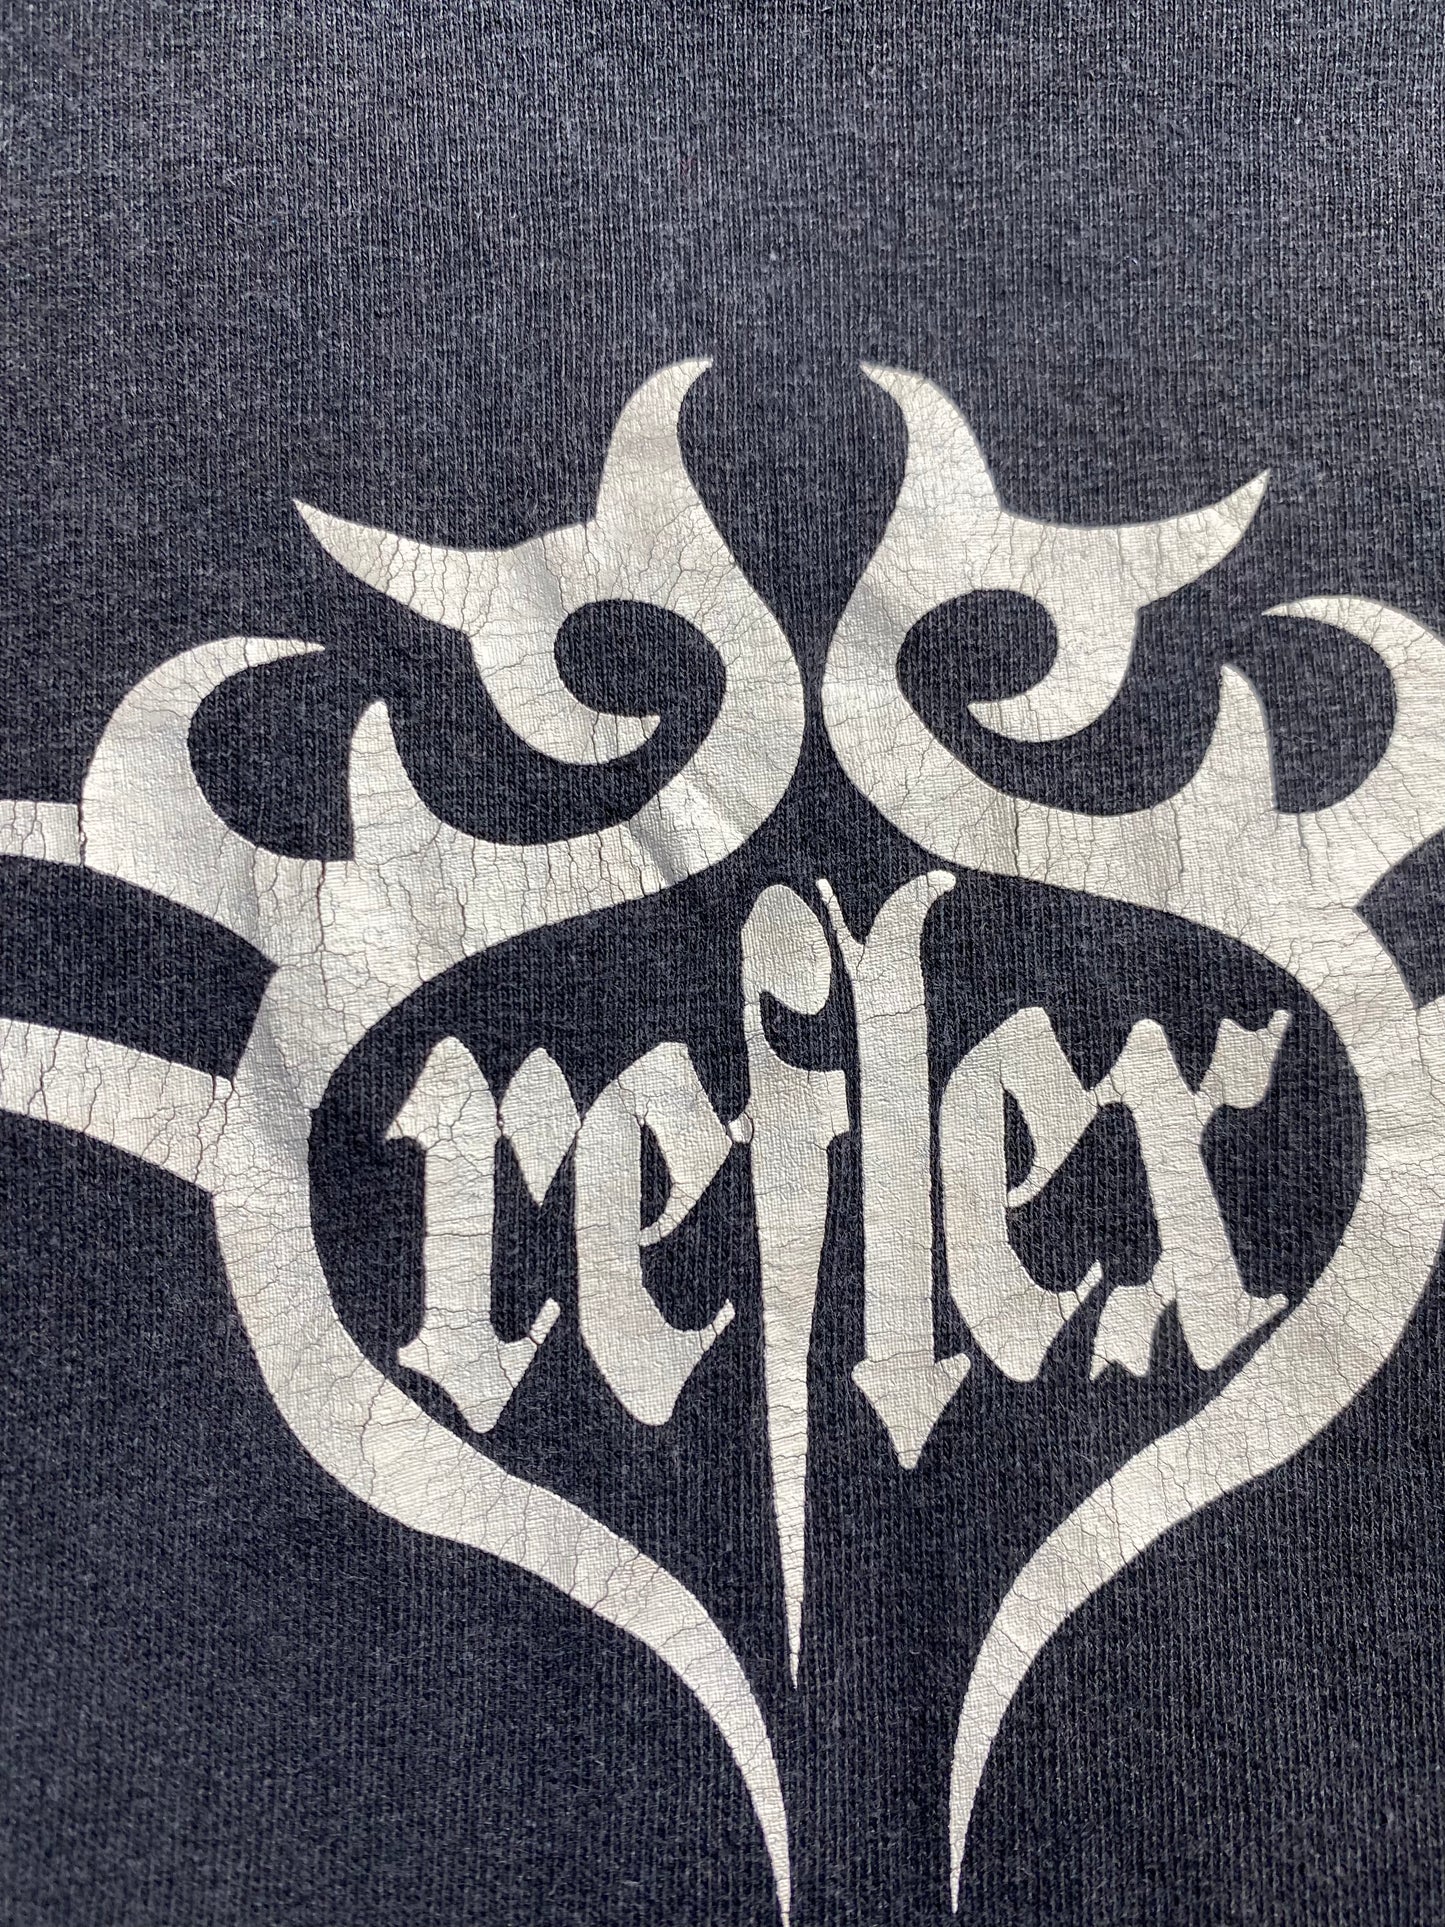 Vintage Reflex T-Shirt